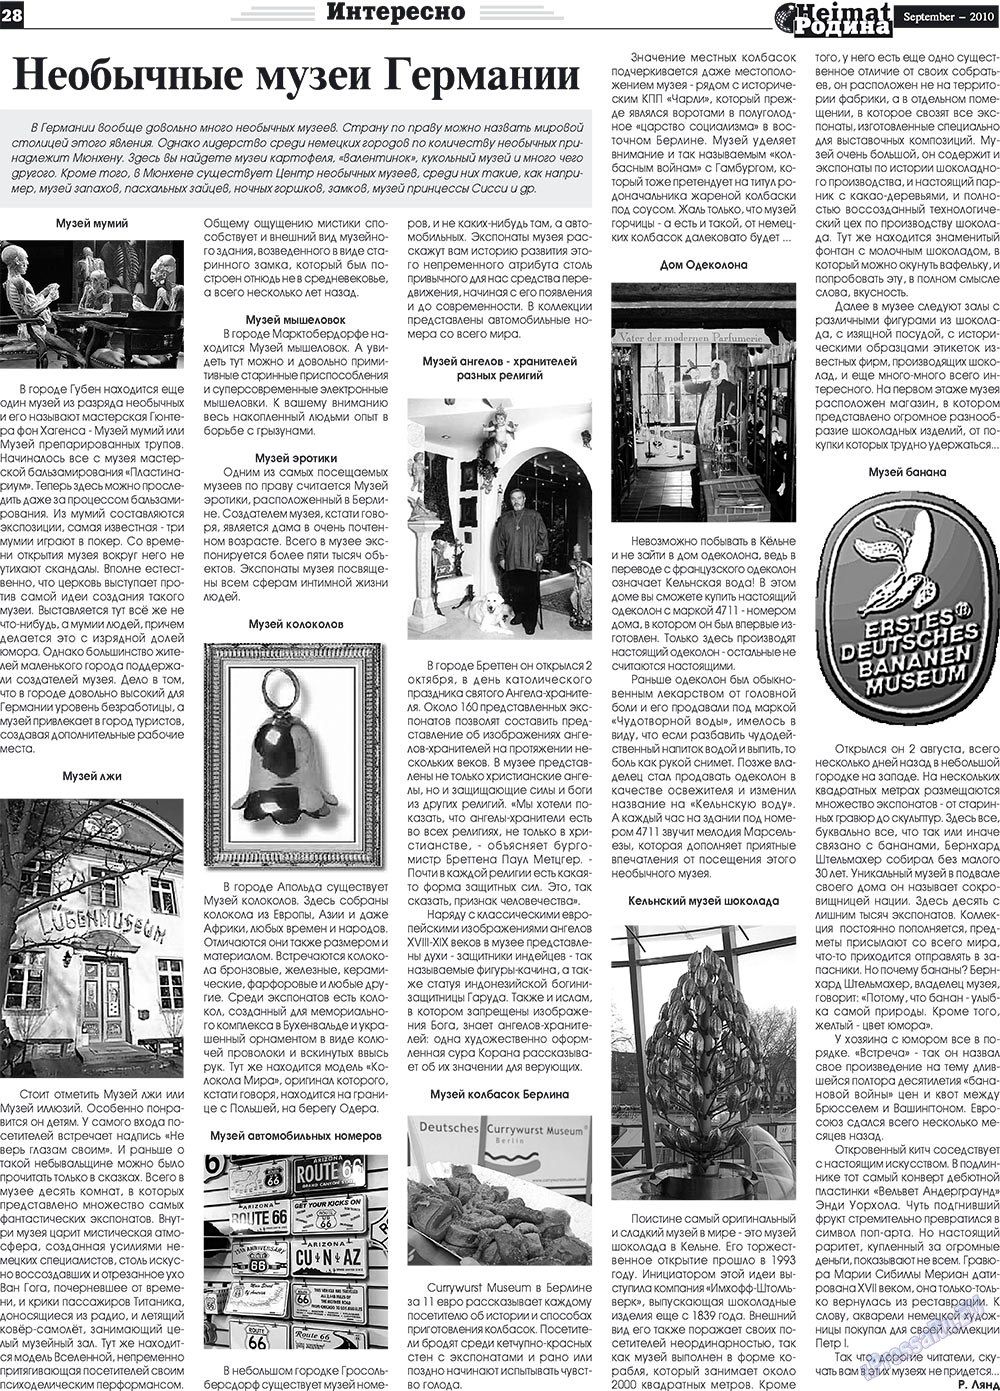 Heimat-Родина (газета). 2010 год, номер 9, стр. 28